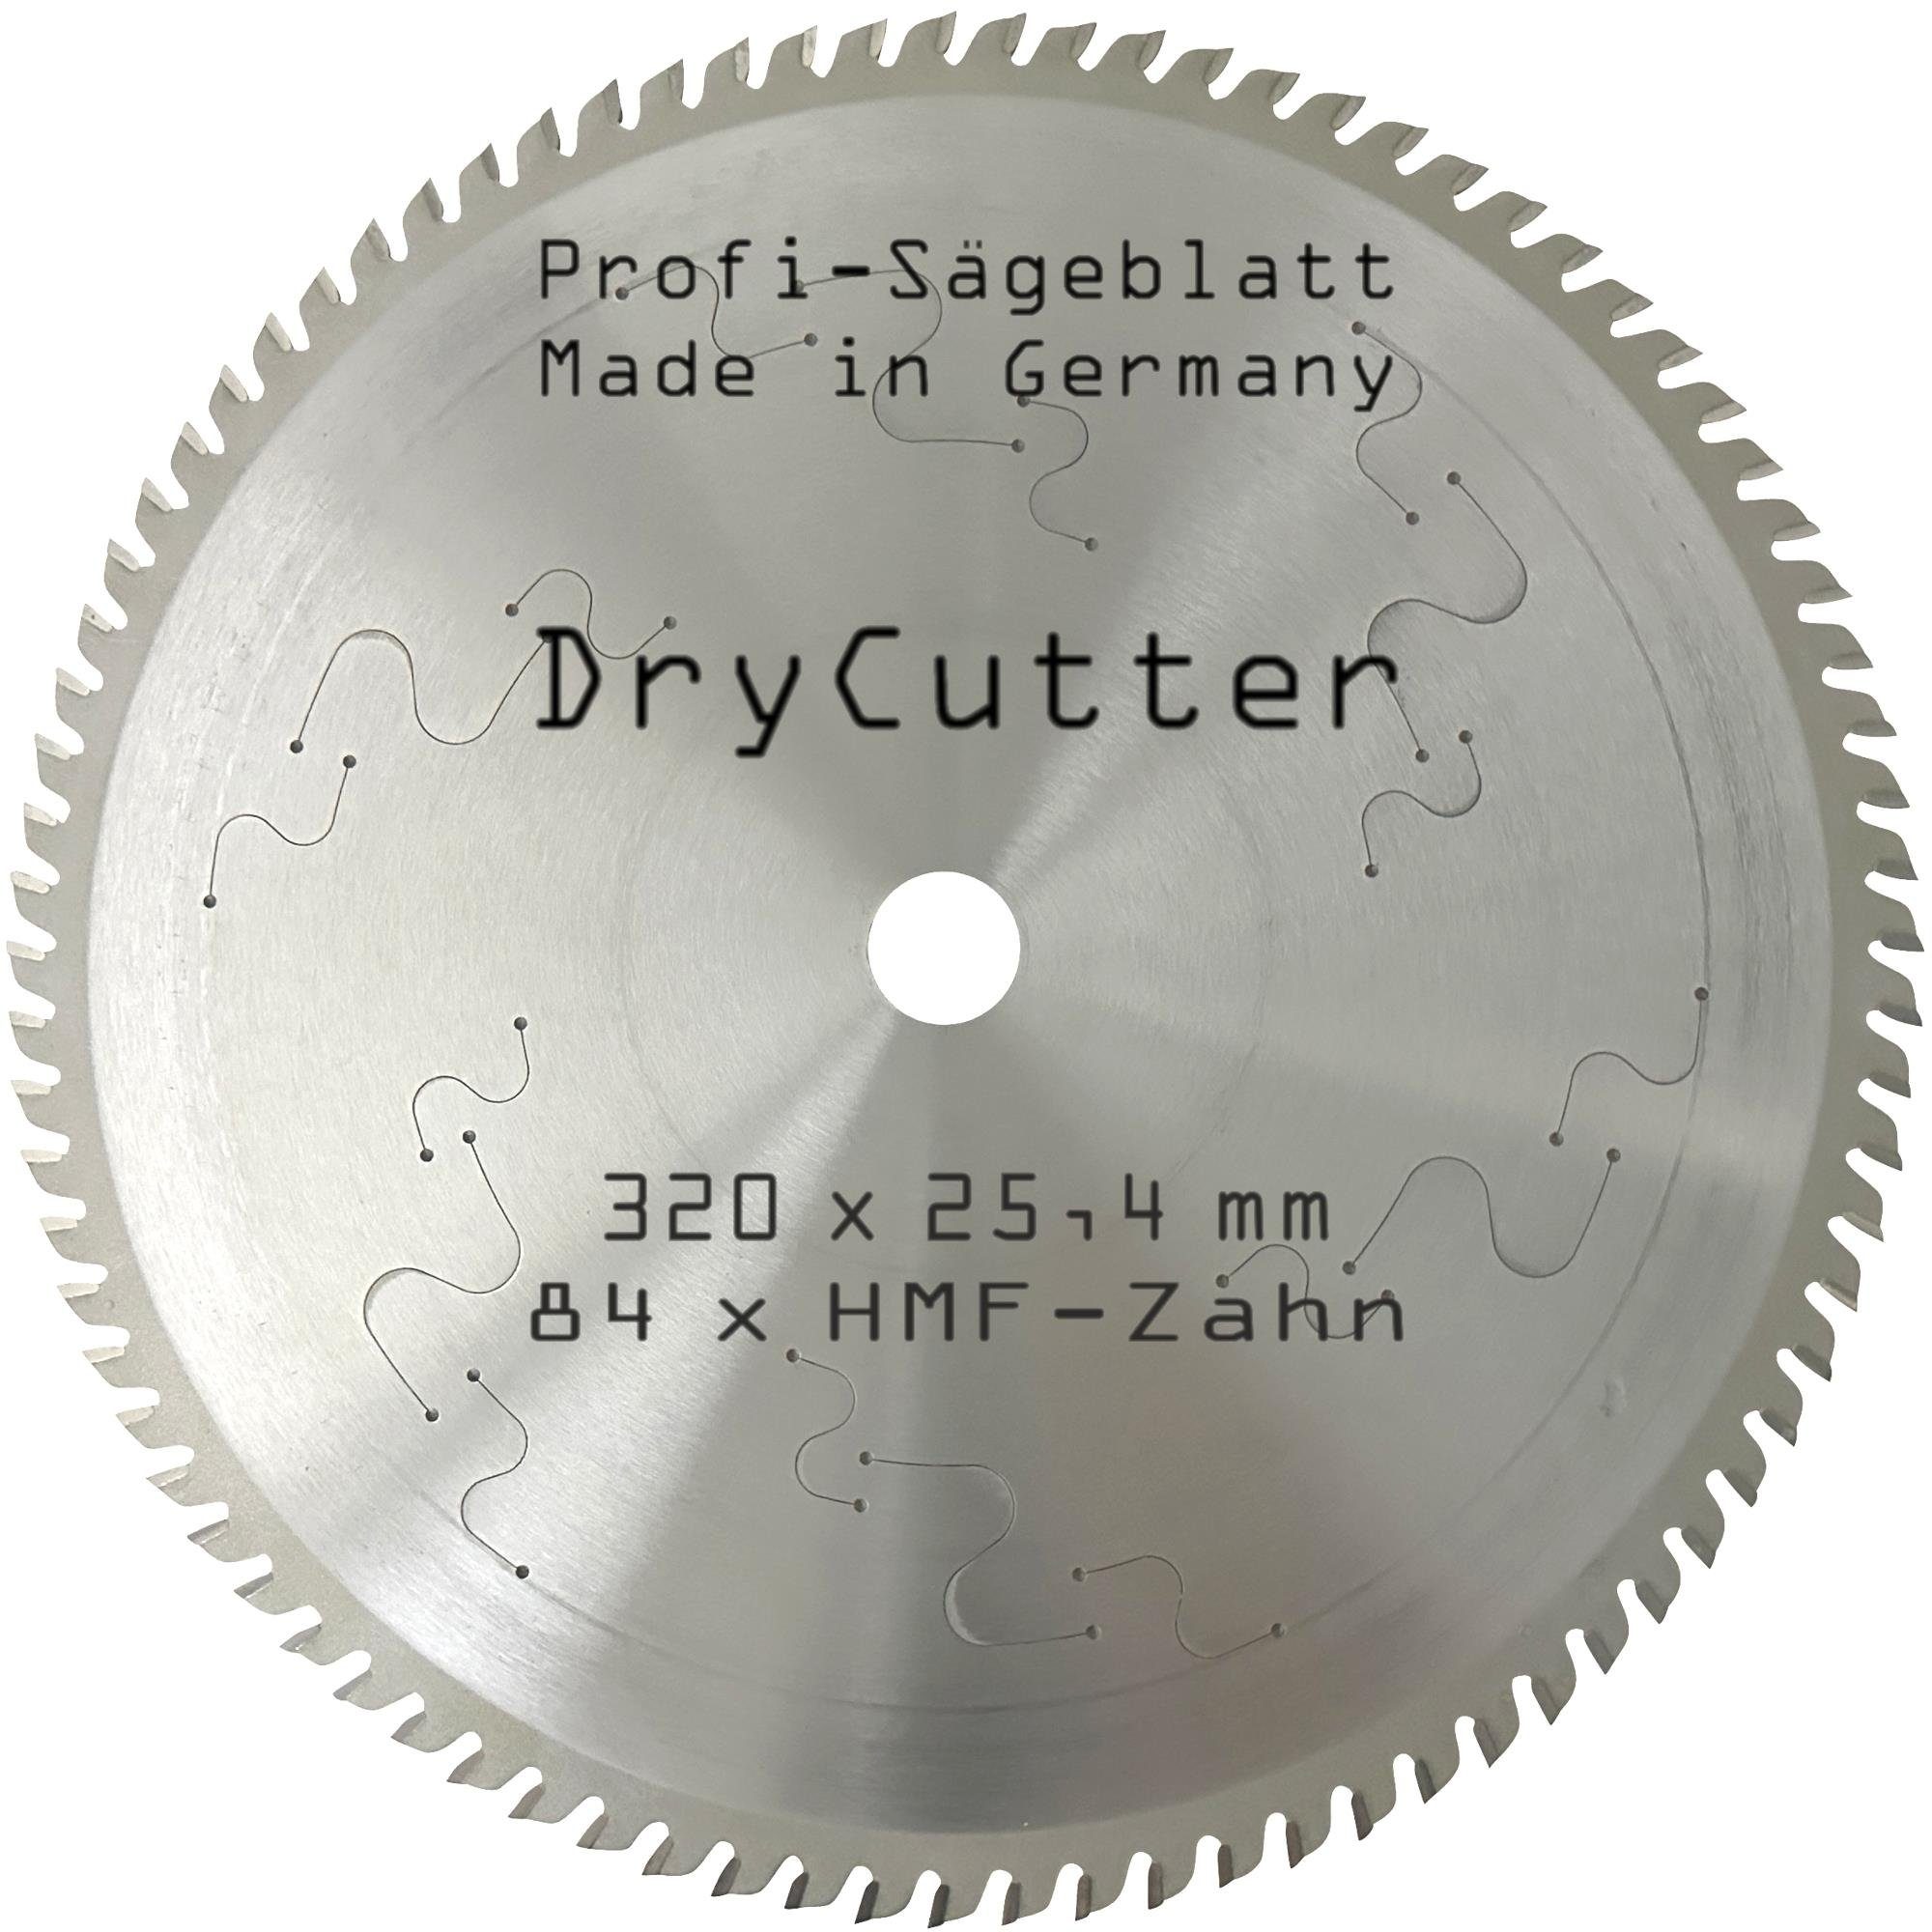 BauSupermarkt24 Kreissägeblatt Sägeblatt Dry-Cutter 320 x 25,4 mm für  Kreissäge Alu Kunstoff Stahl